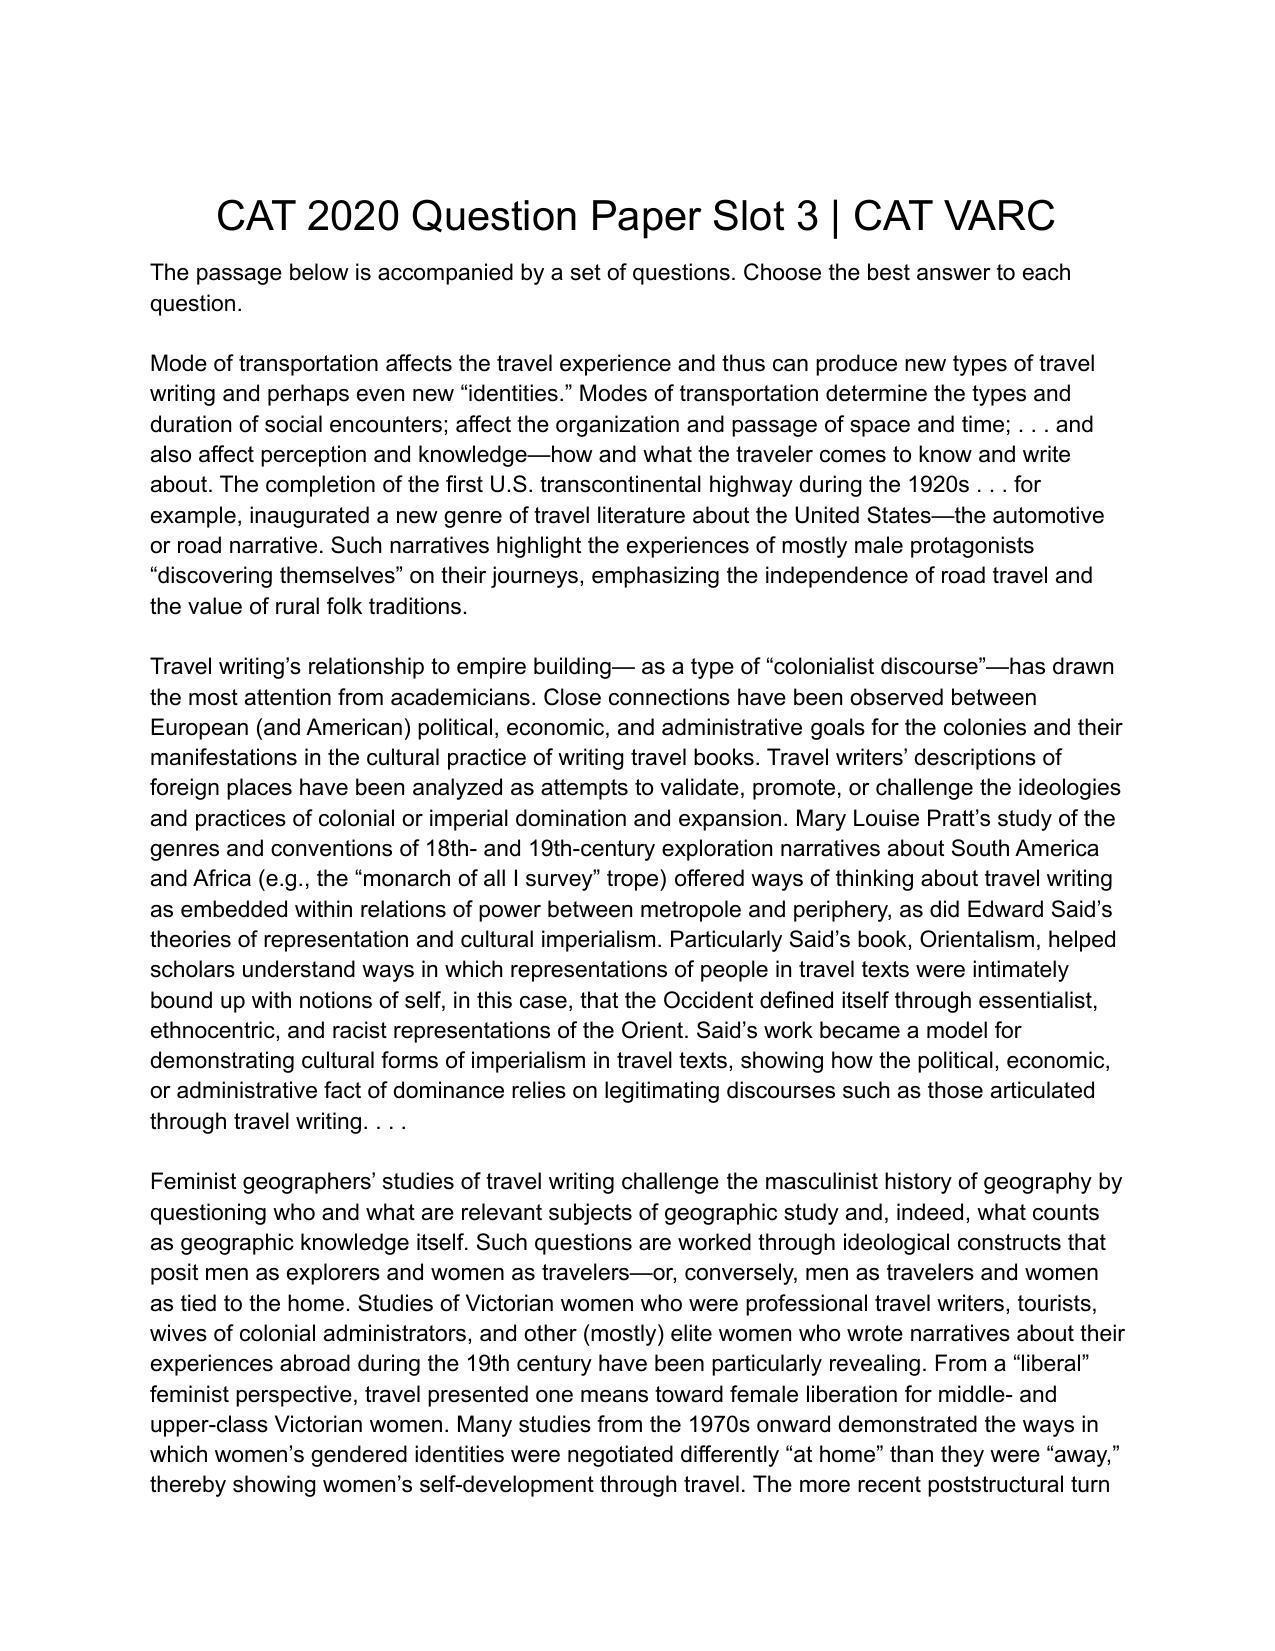 CAT 2020 CAT VARC Slot 3 Question Paper - Page 1